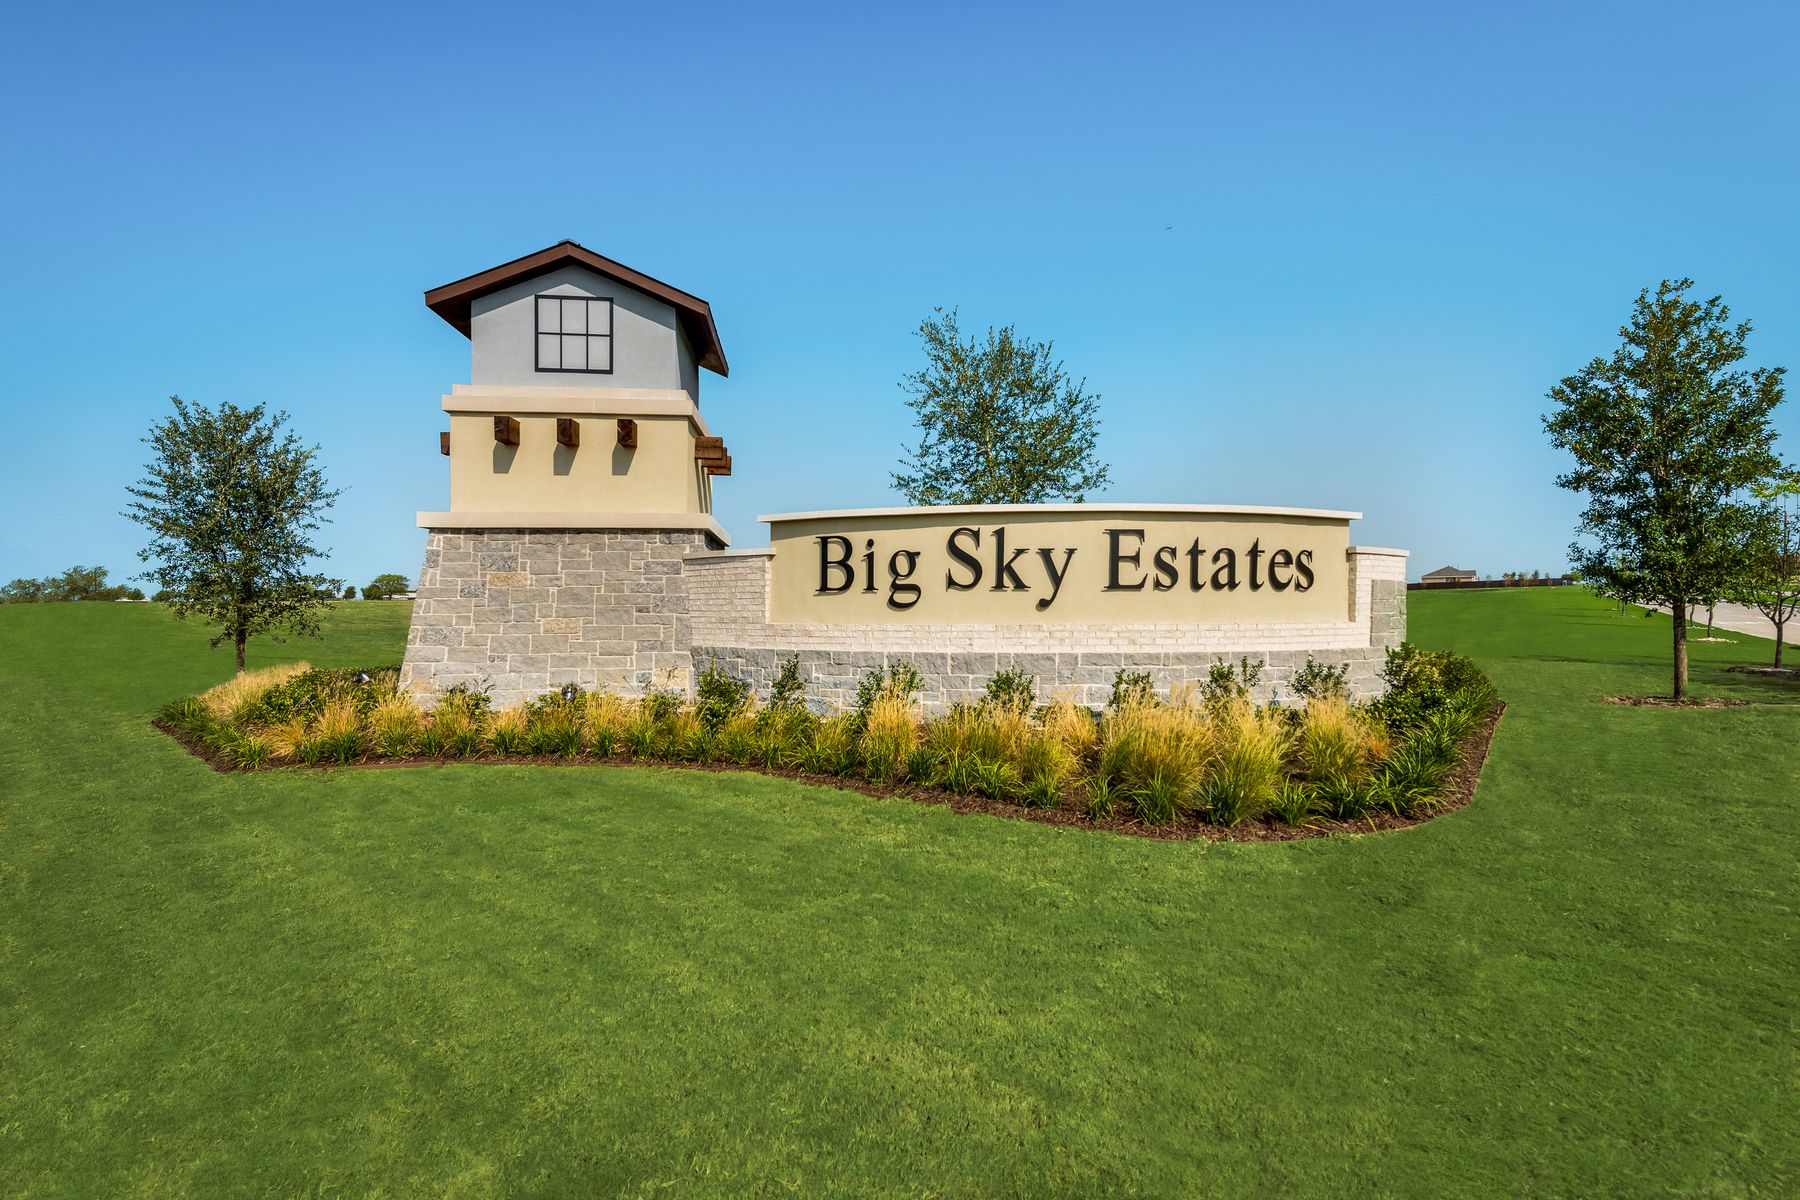 LGI Homes at Big Sky Estates:LGI Homes at Big Sky Estates